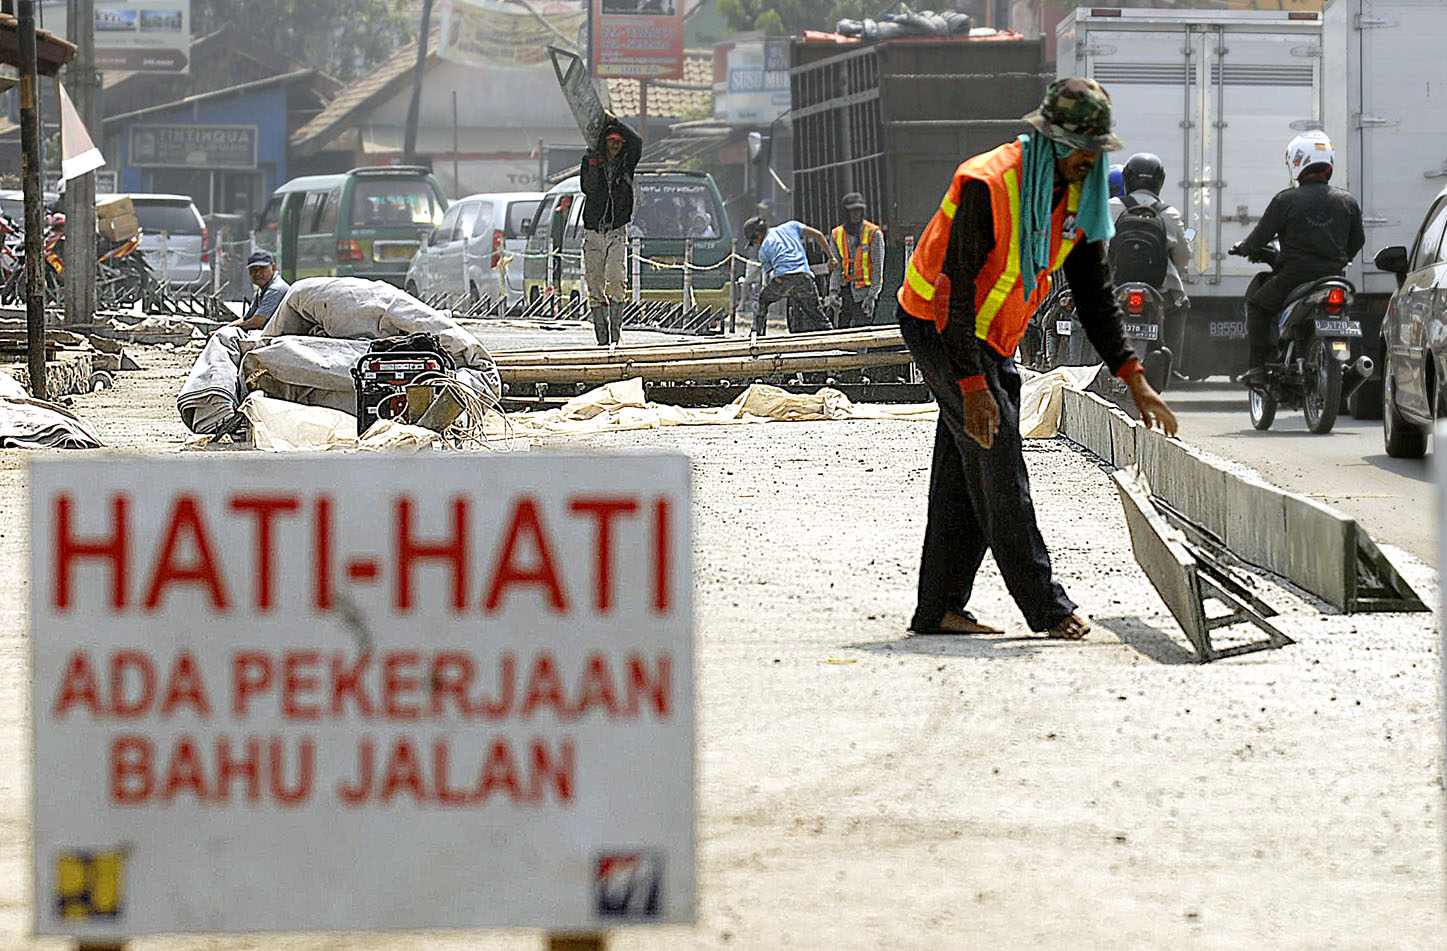  FOTO: Perbaikan jalan bantu perlancar distribusi sayuran di Bandung